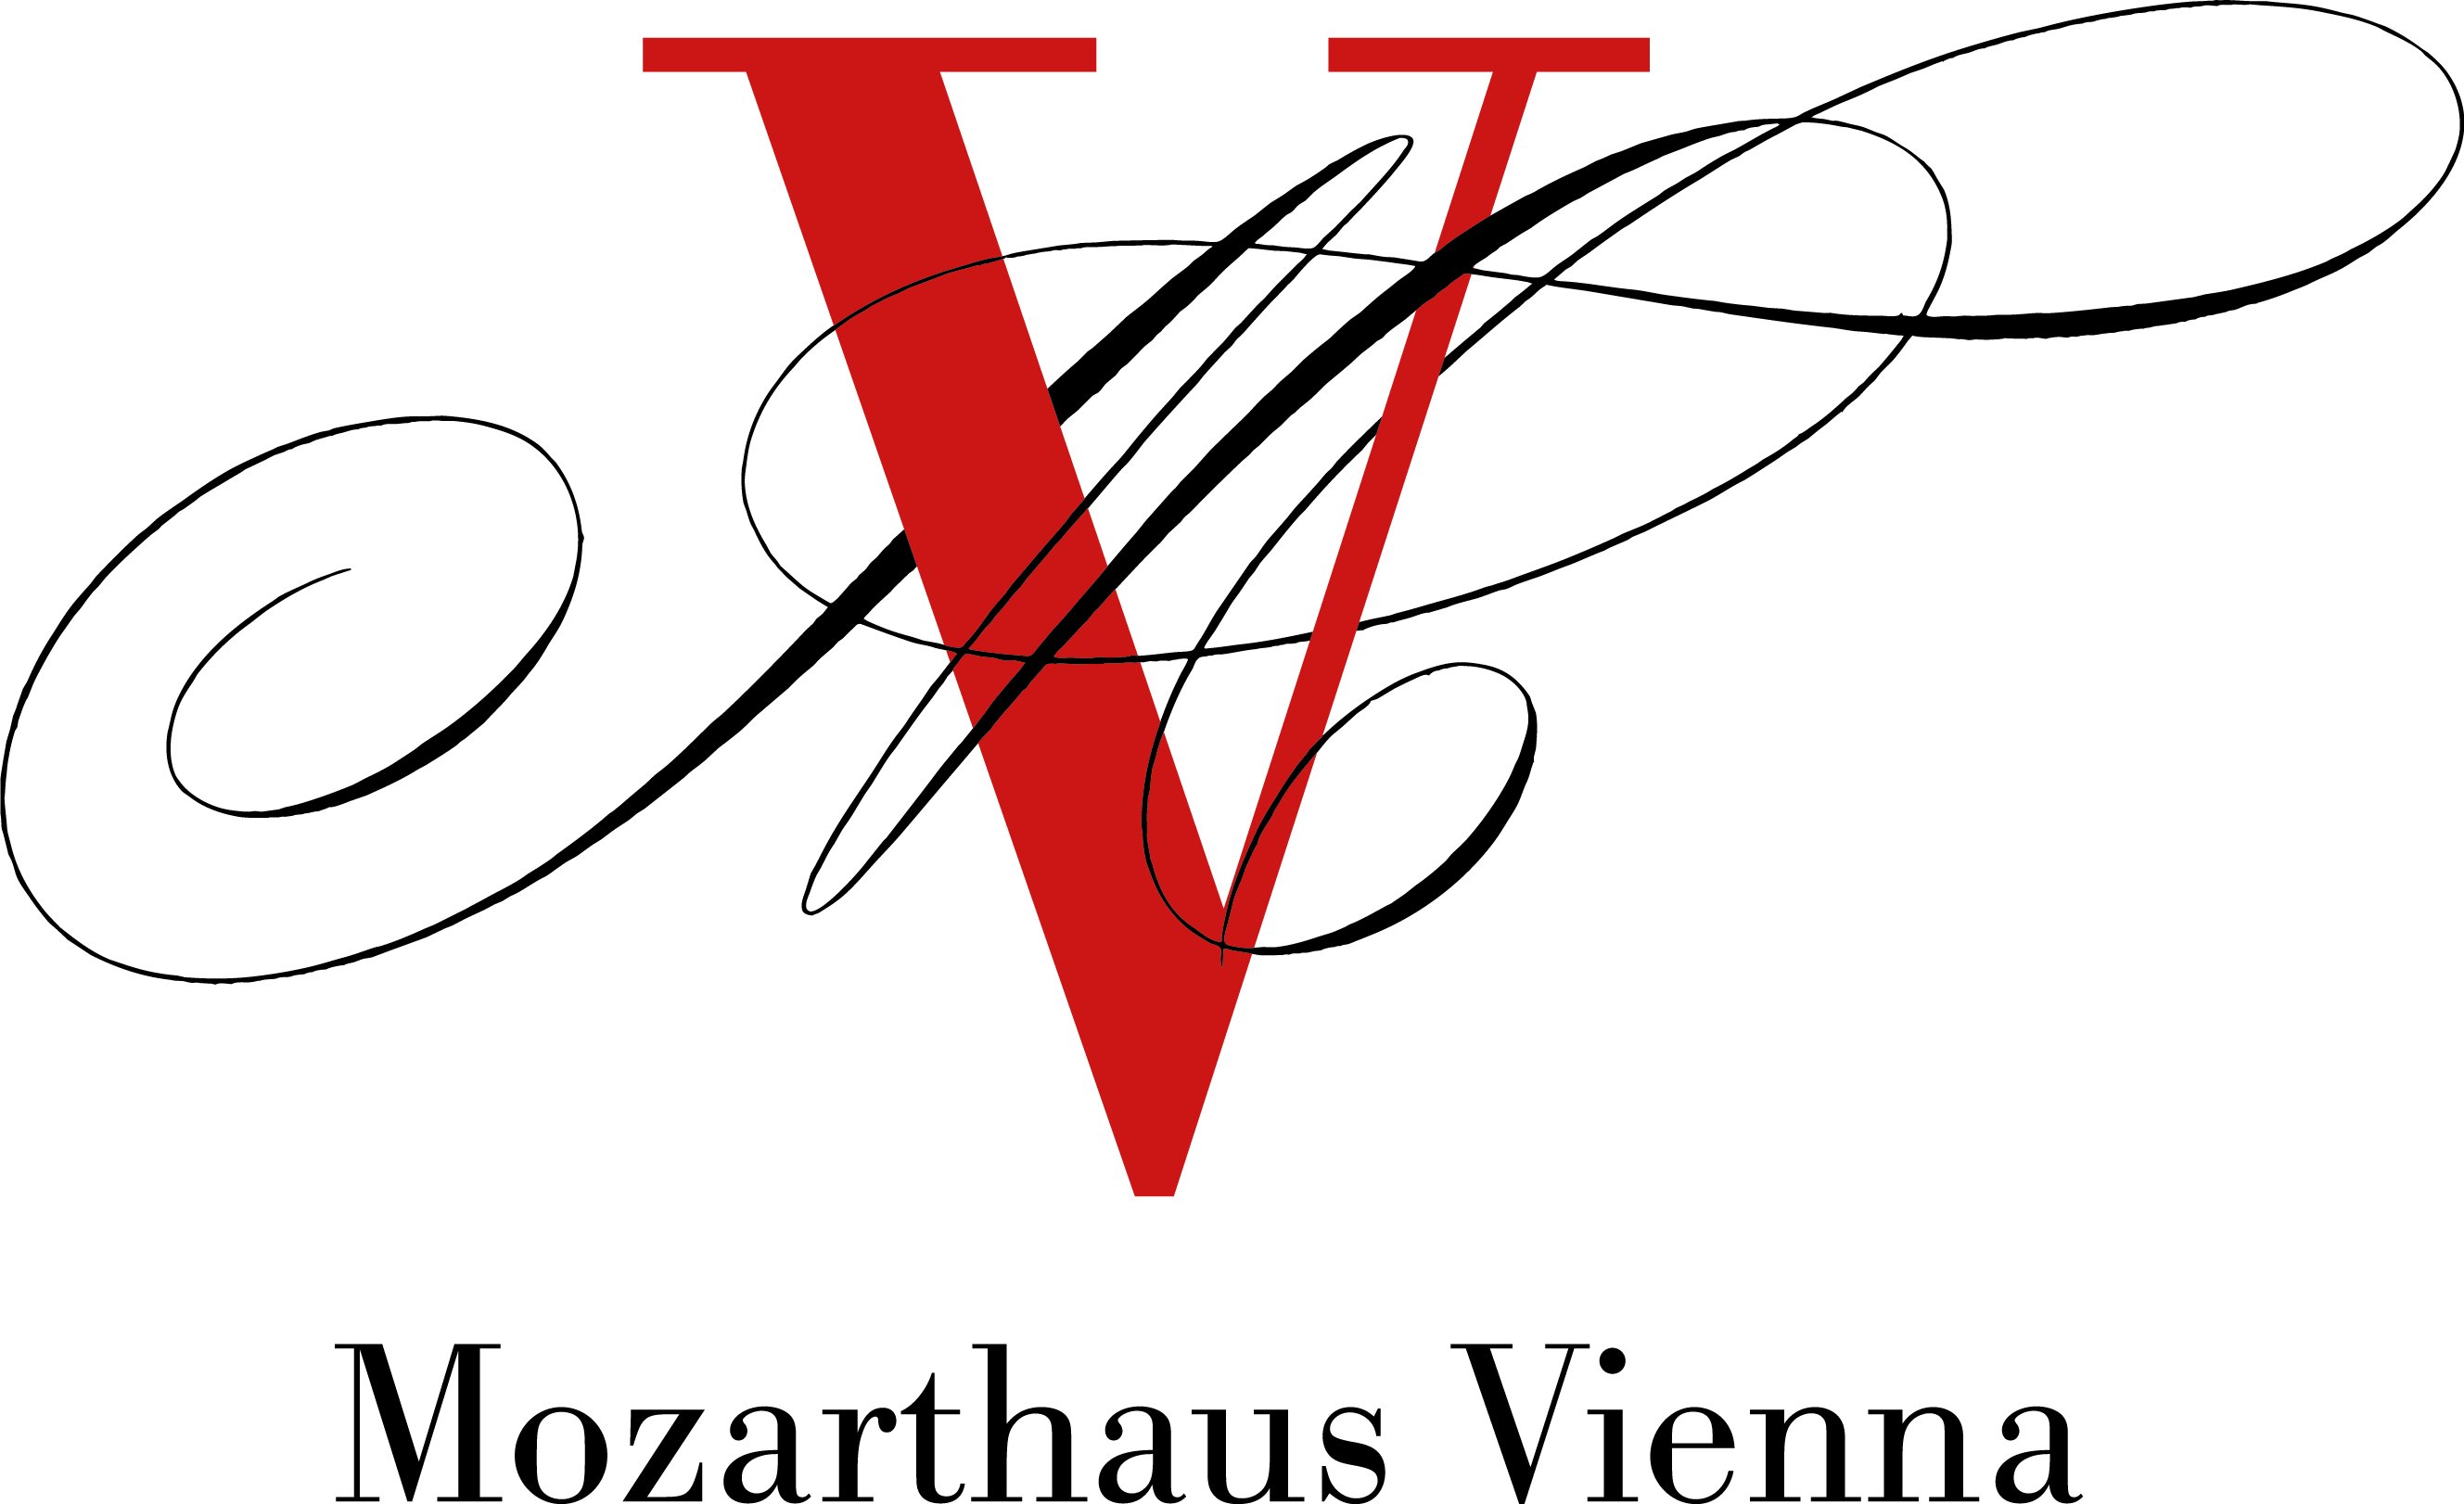 Mozarthaus Vienna © Mozarthaus Vienna